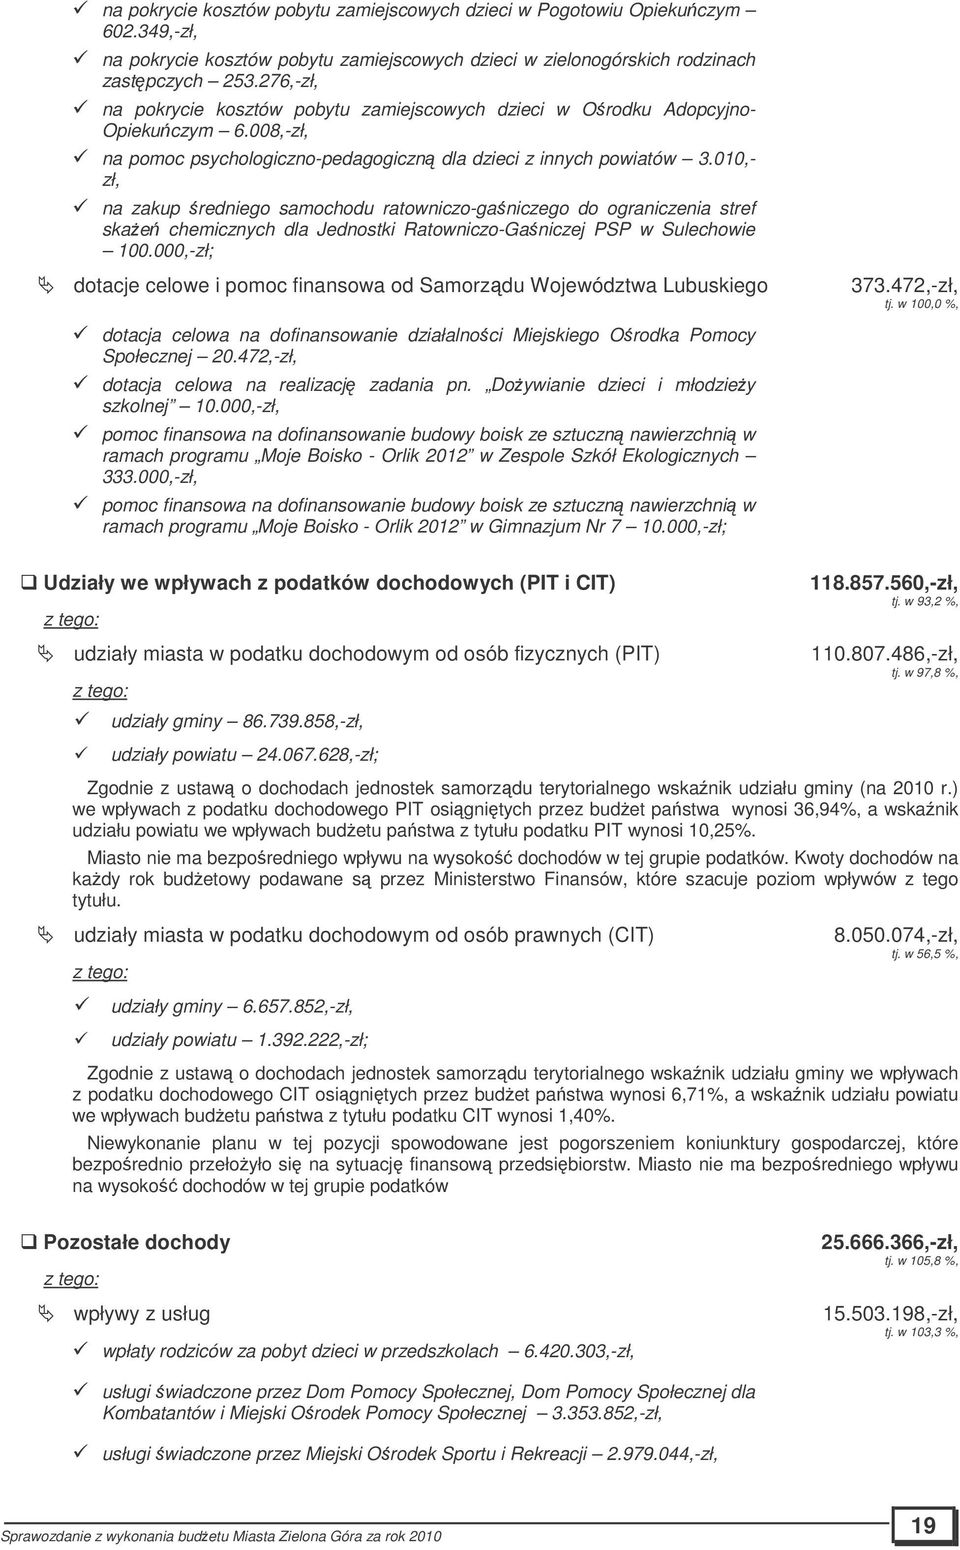 010,- zł, na zakup redniego samochodu ratowniczo-ganiczego do ograniczenia stref skae chemicznych dla Jednostki Ratowniczo-Ganiczej PSP w Sulechowie 100.